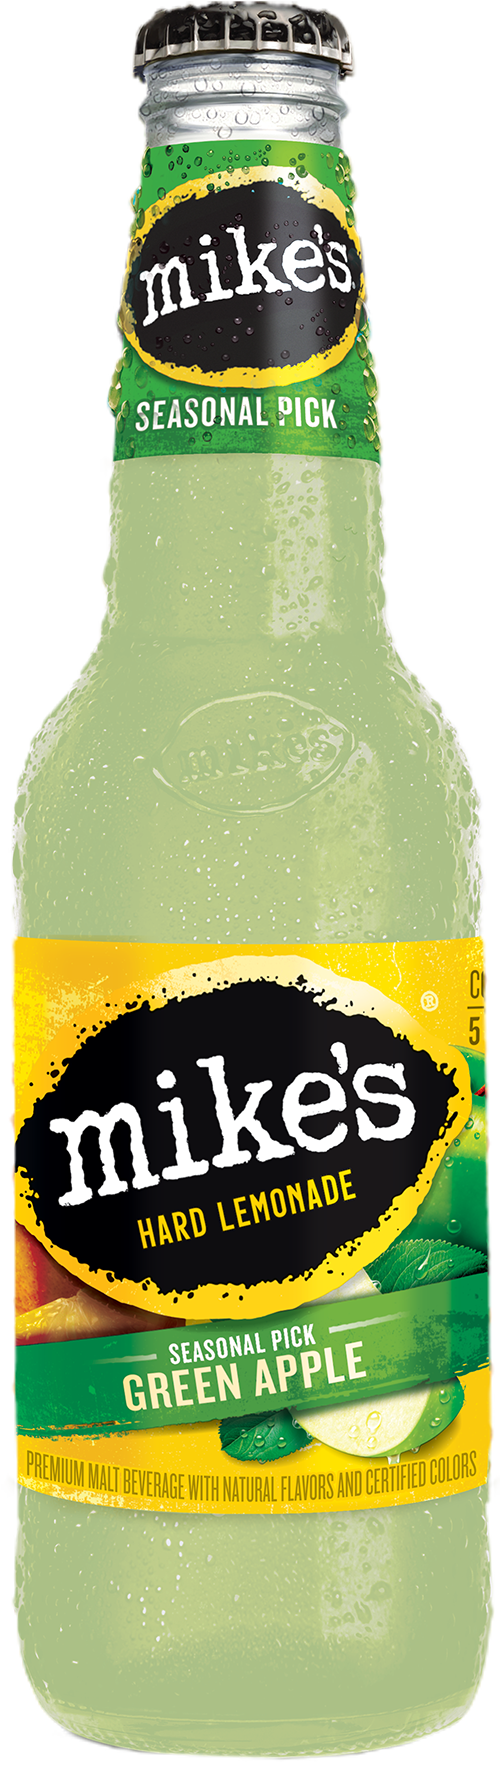 Mike's Hard Green Apple Lemonade Bottle